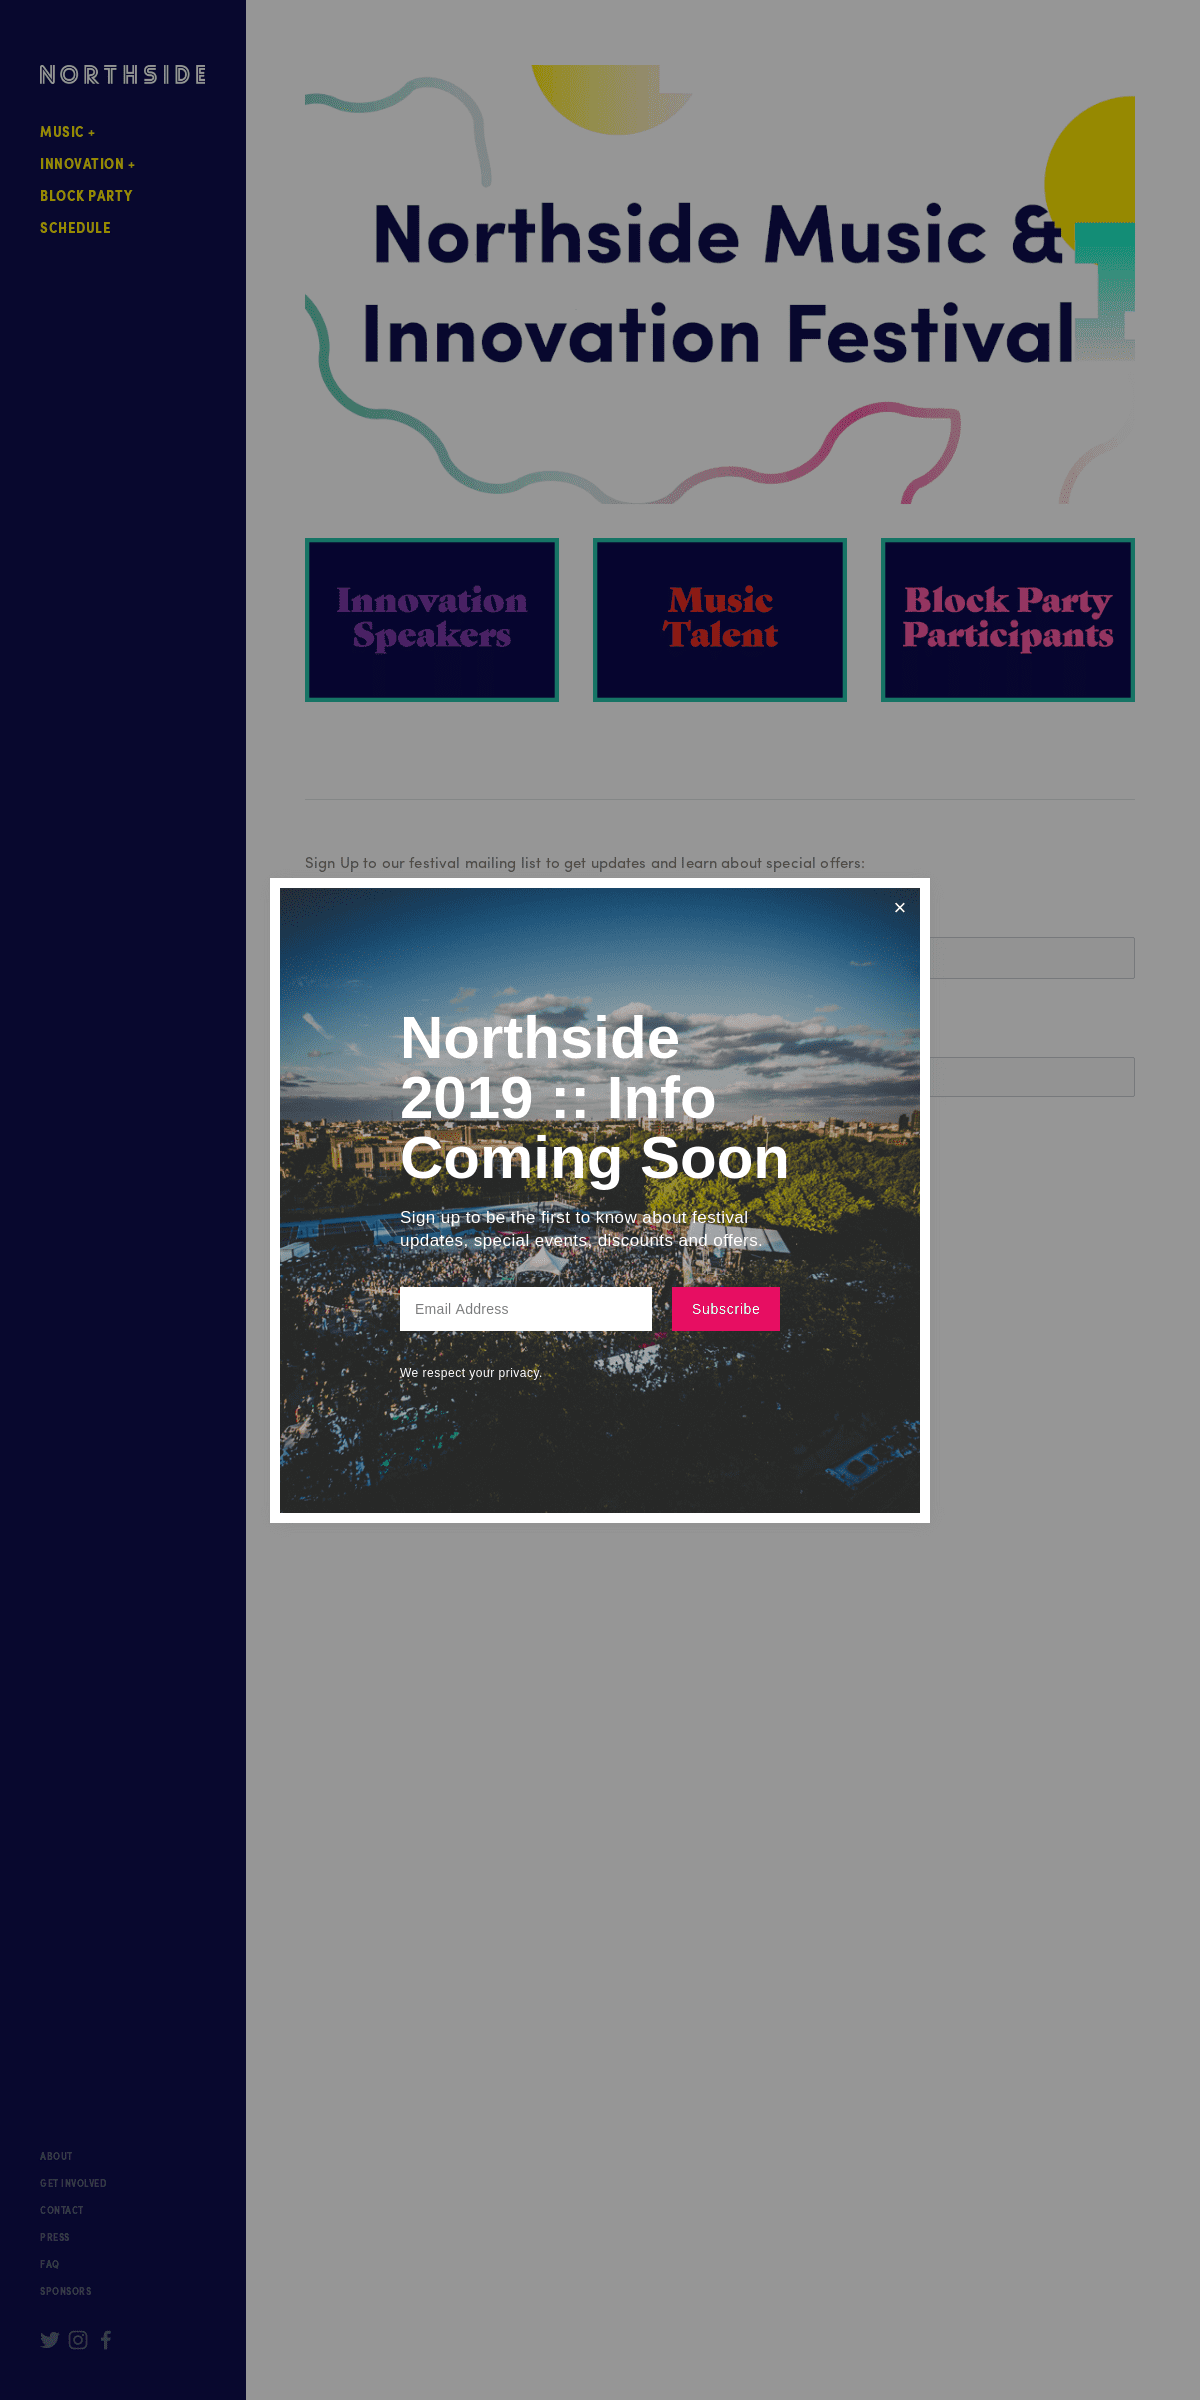 A complete backup of northsidefestival.com